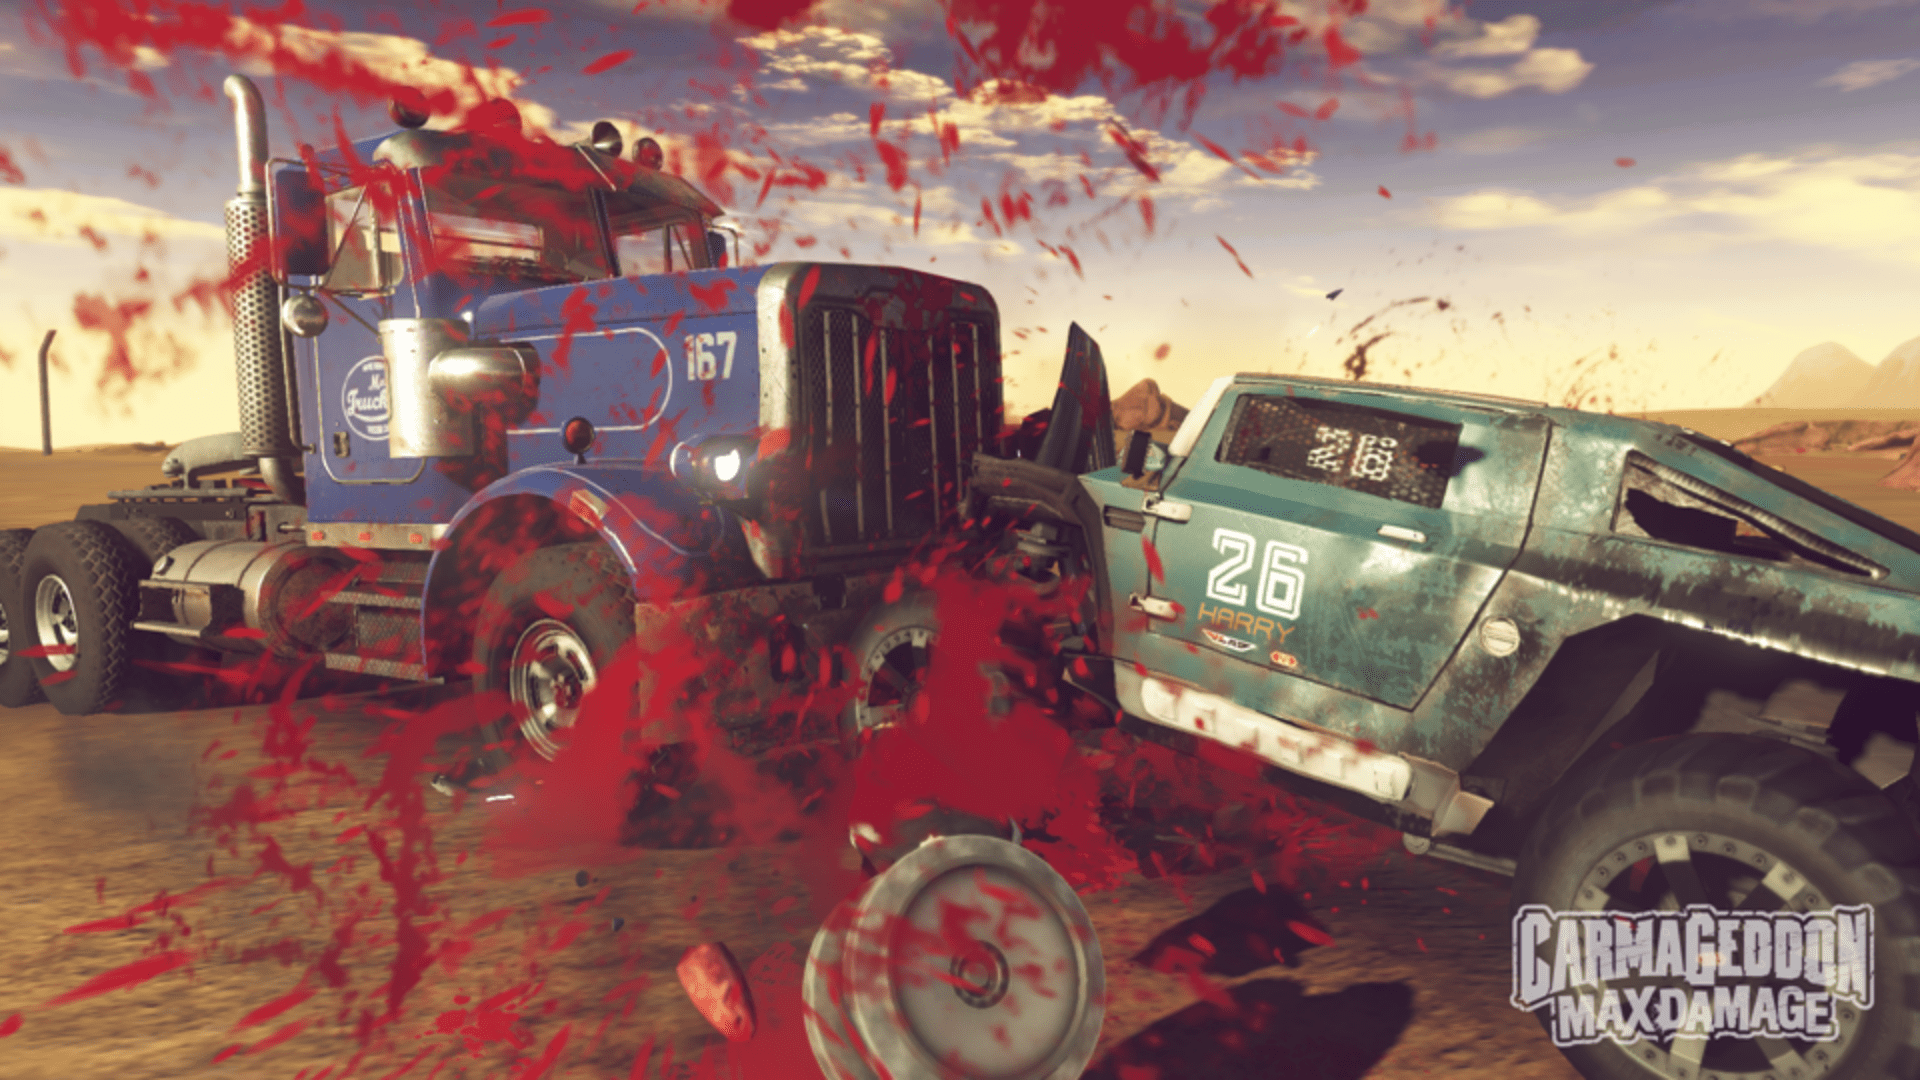 Carmageddon: Max Damage Brings Mayhem to Consoles